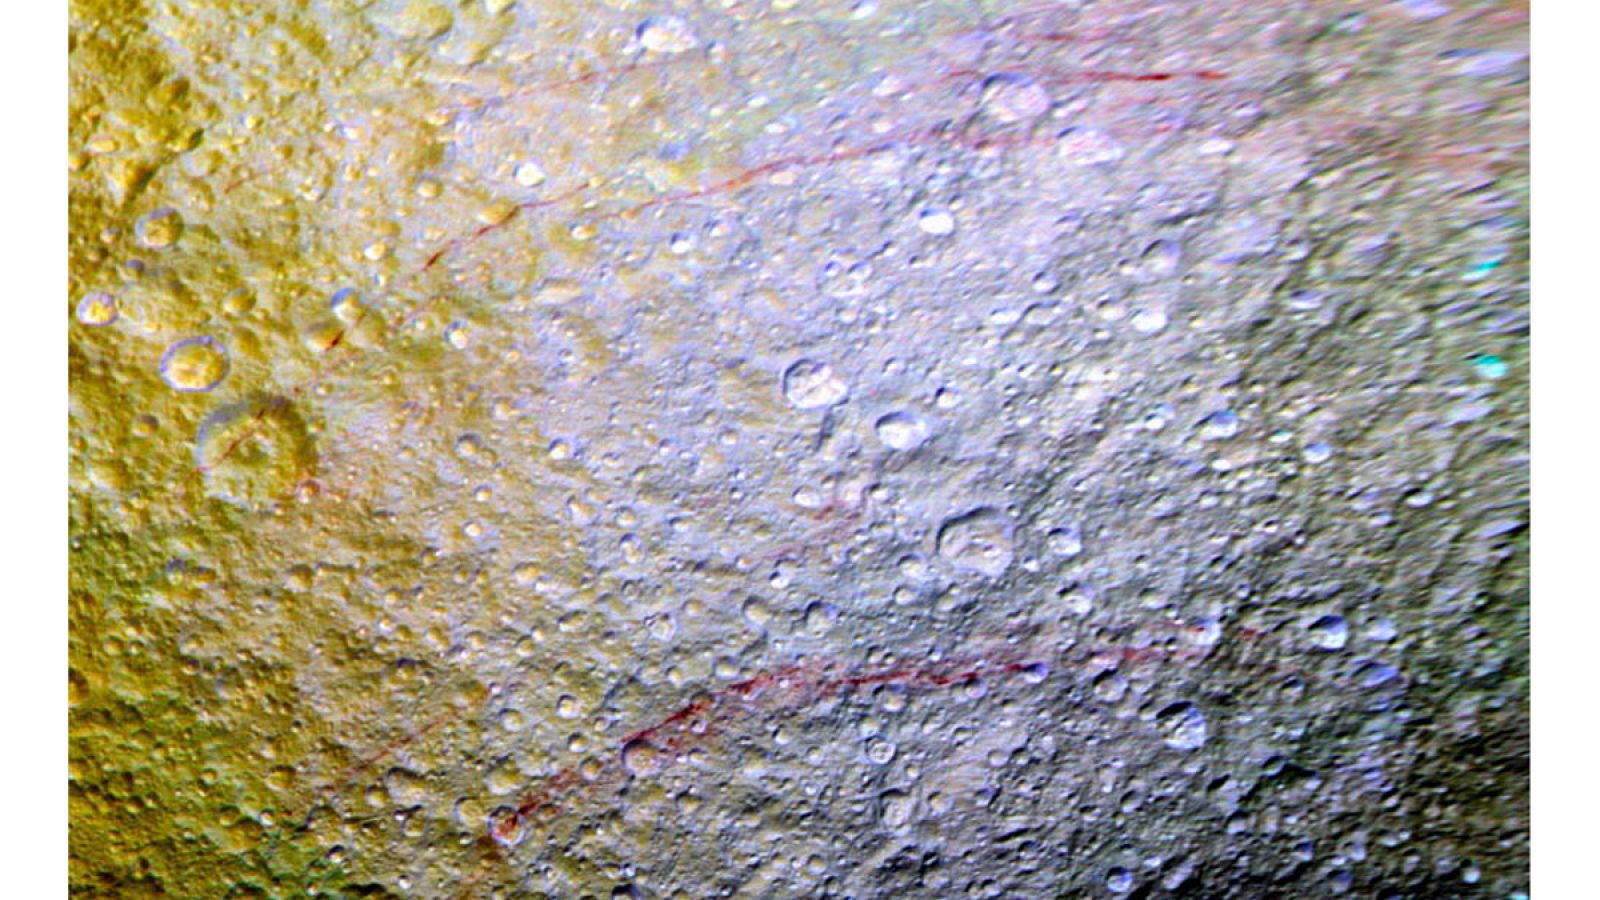 La NASA ha hallado sobre la superficie de Tetis, una de las lunas de Saturno, unas misteriosas manchas rojas de forma alargada